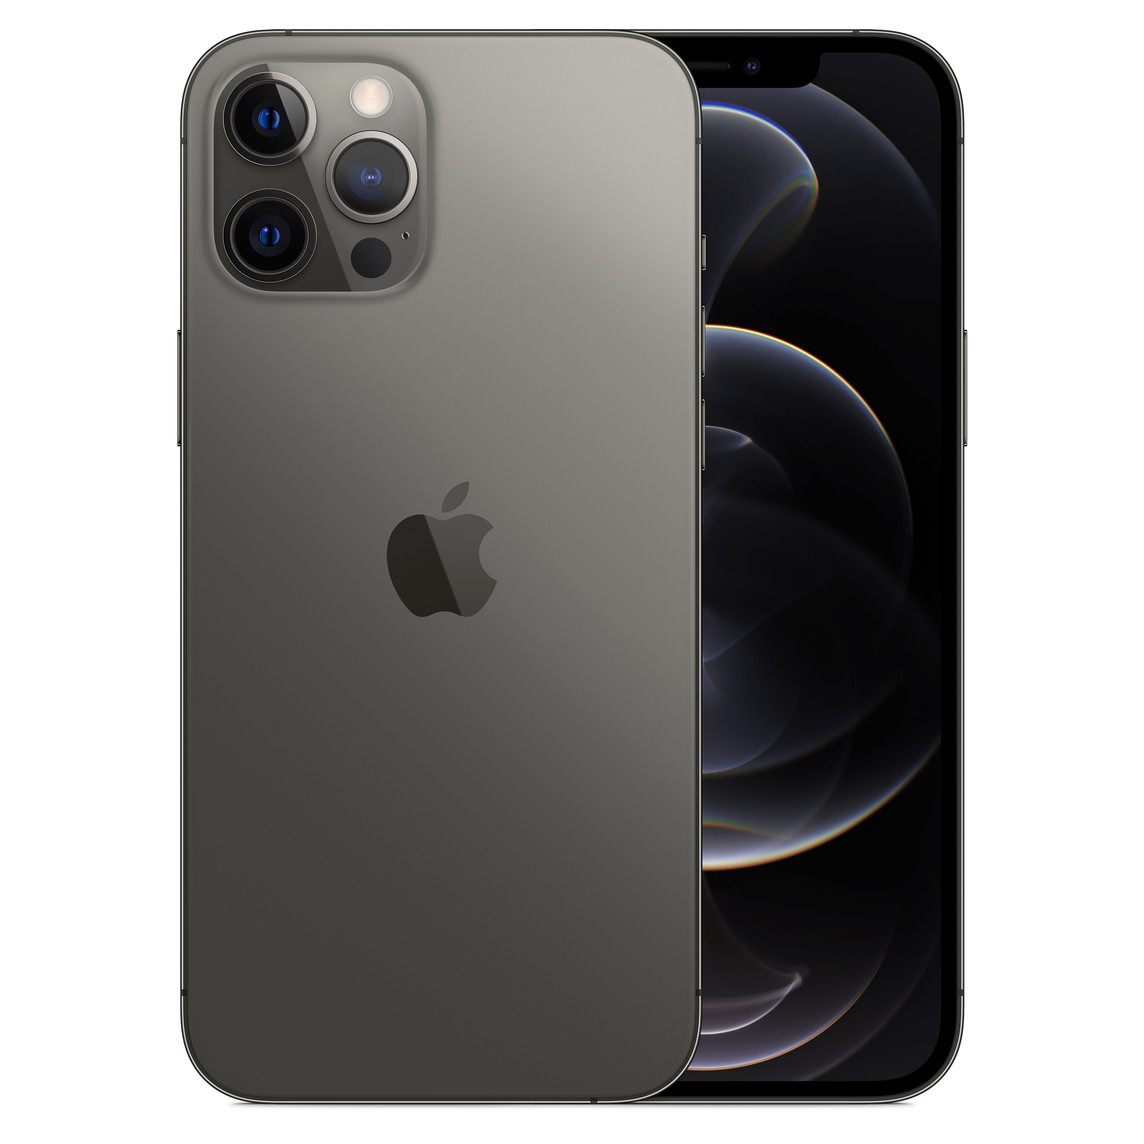 iPhone 12 Pro Max in Graphit, Pro Kamera-System mit True Tone Blitz, LiDAR, Mikrofon, Apple Logo in der Mitte. Vorderseite, All-Screen Display